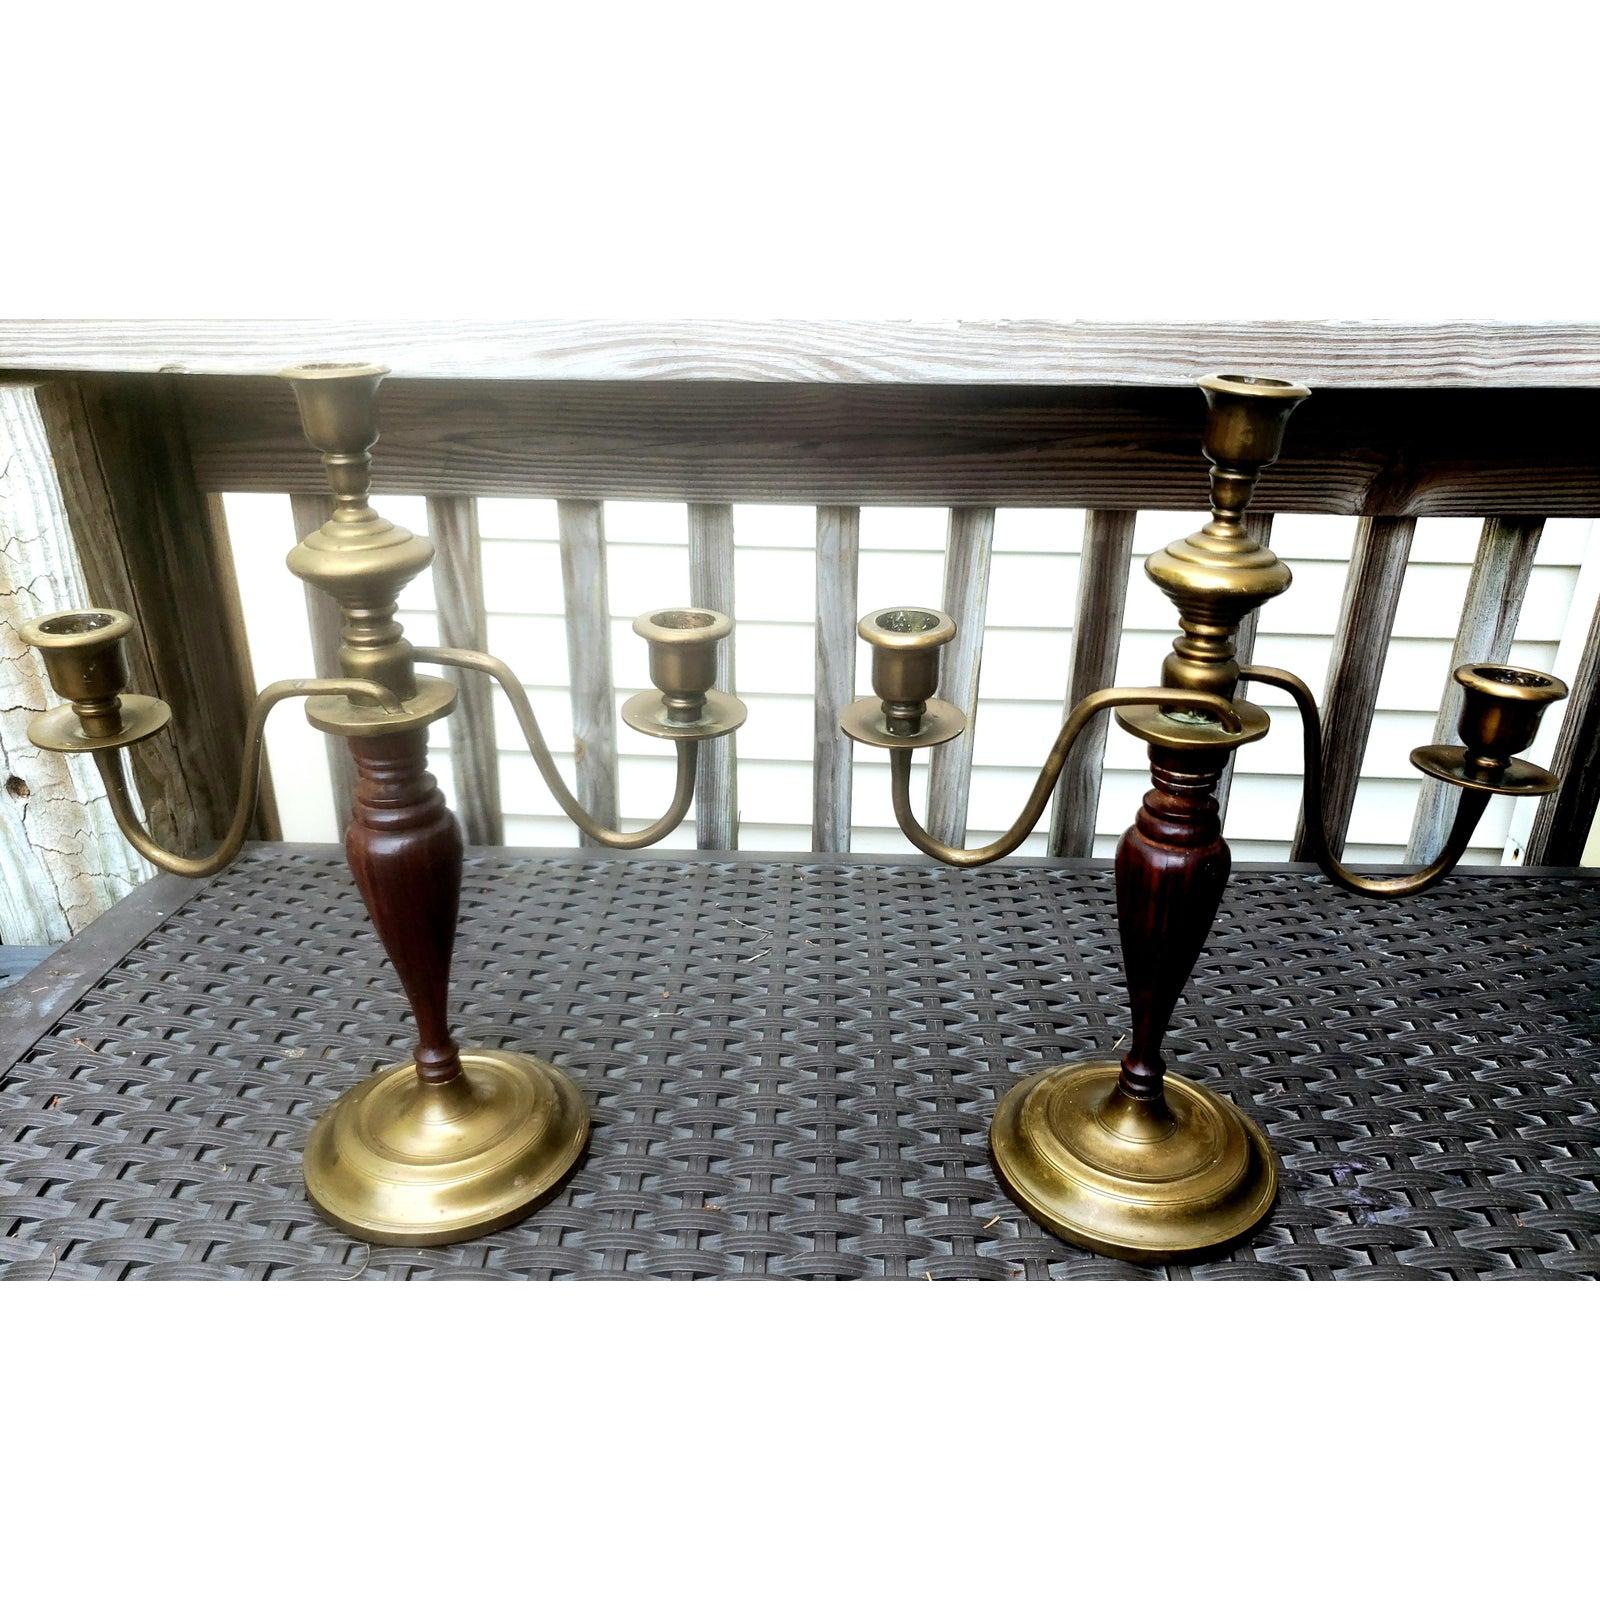 Paar Kandelaber aus massivem Mahagoni und Messing aus dem 19. Jahrhundert, Kerzenständer, Kerzenhalter.
Ausgezeichneter antiker Zustand.
Maße: 11,5